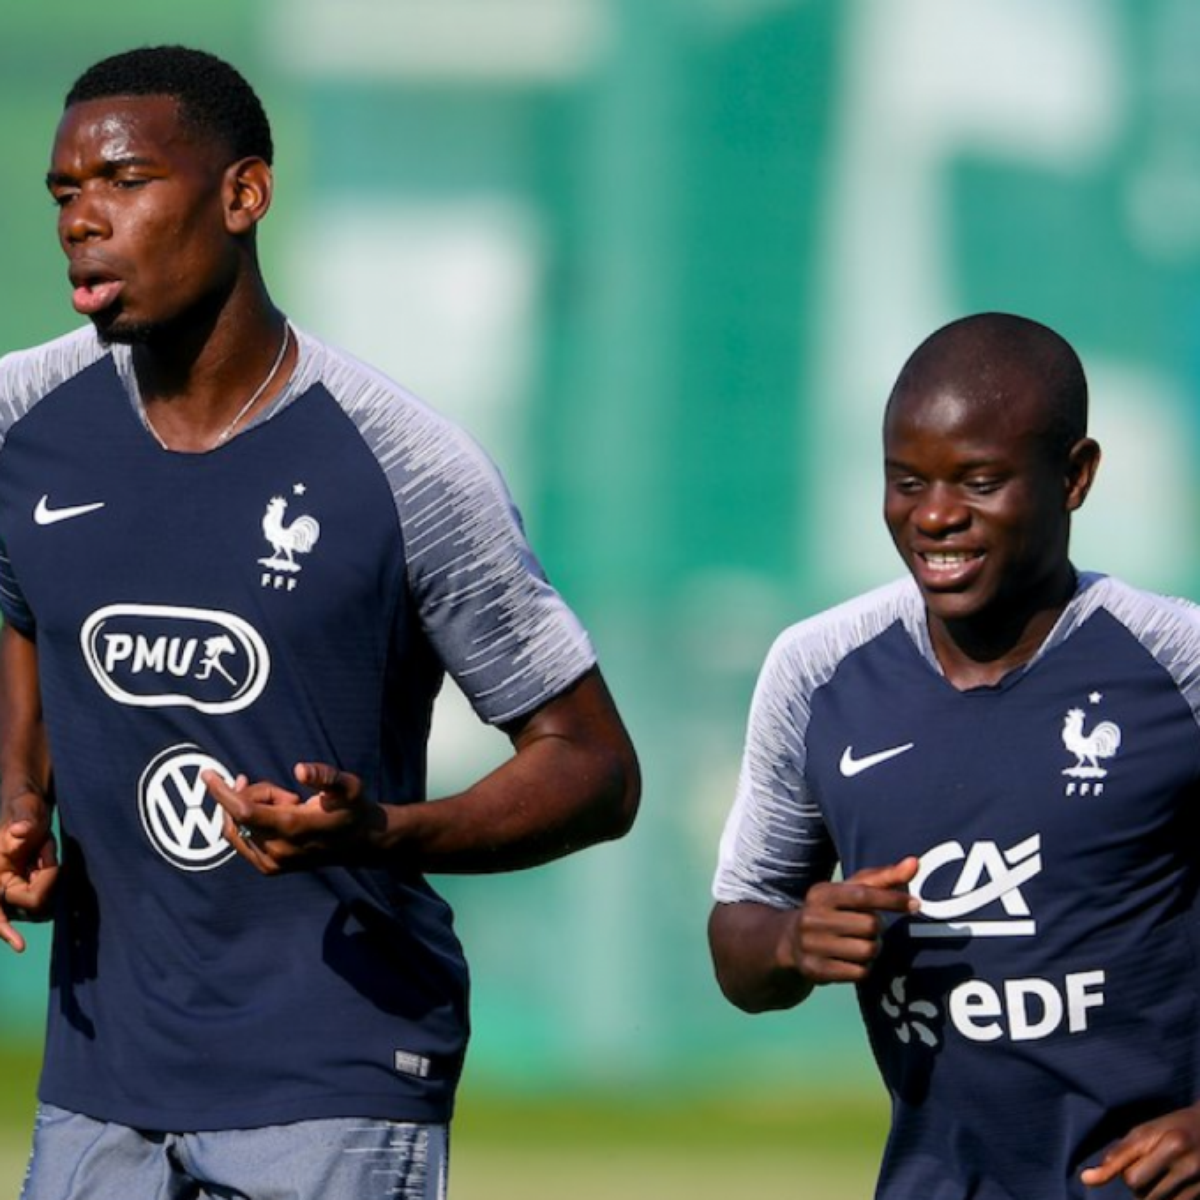 França na Copa 2018: Kanté jogou final da Copa com gastroenterite, diz  jornal - UOL Copa do Mundo 2018